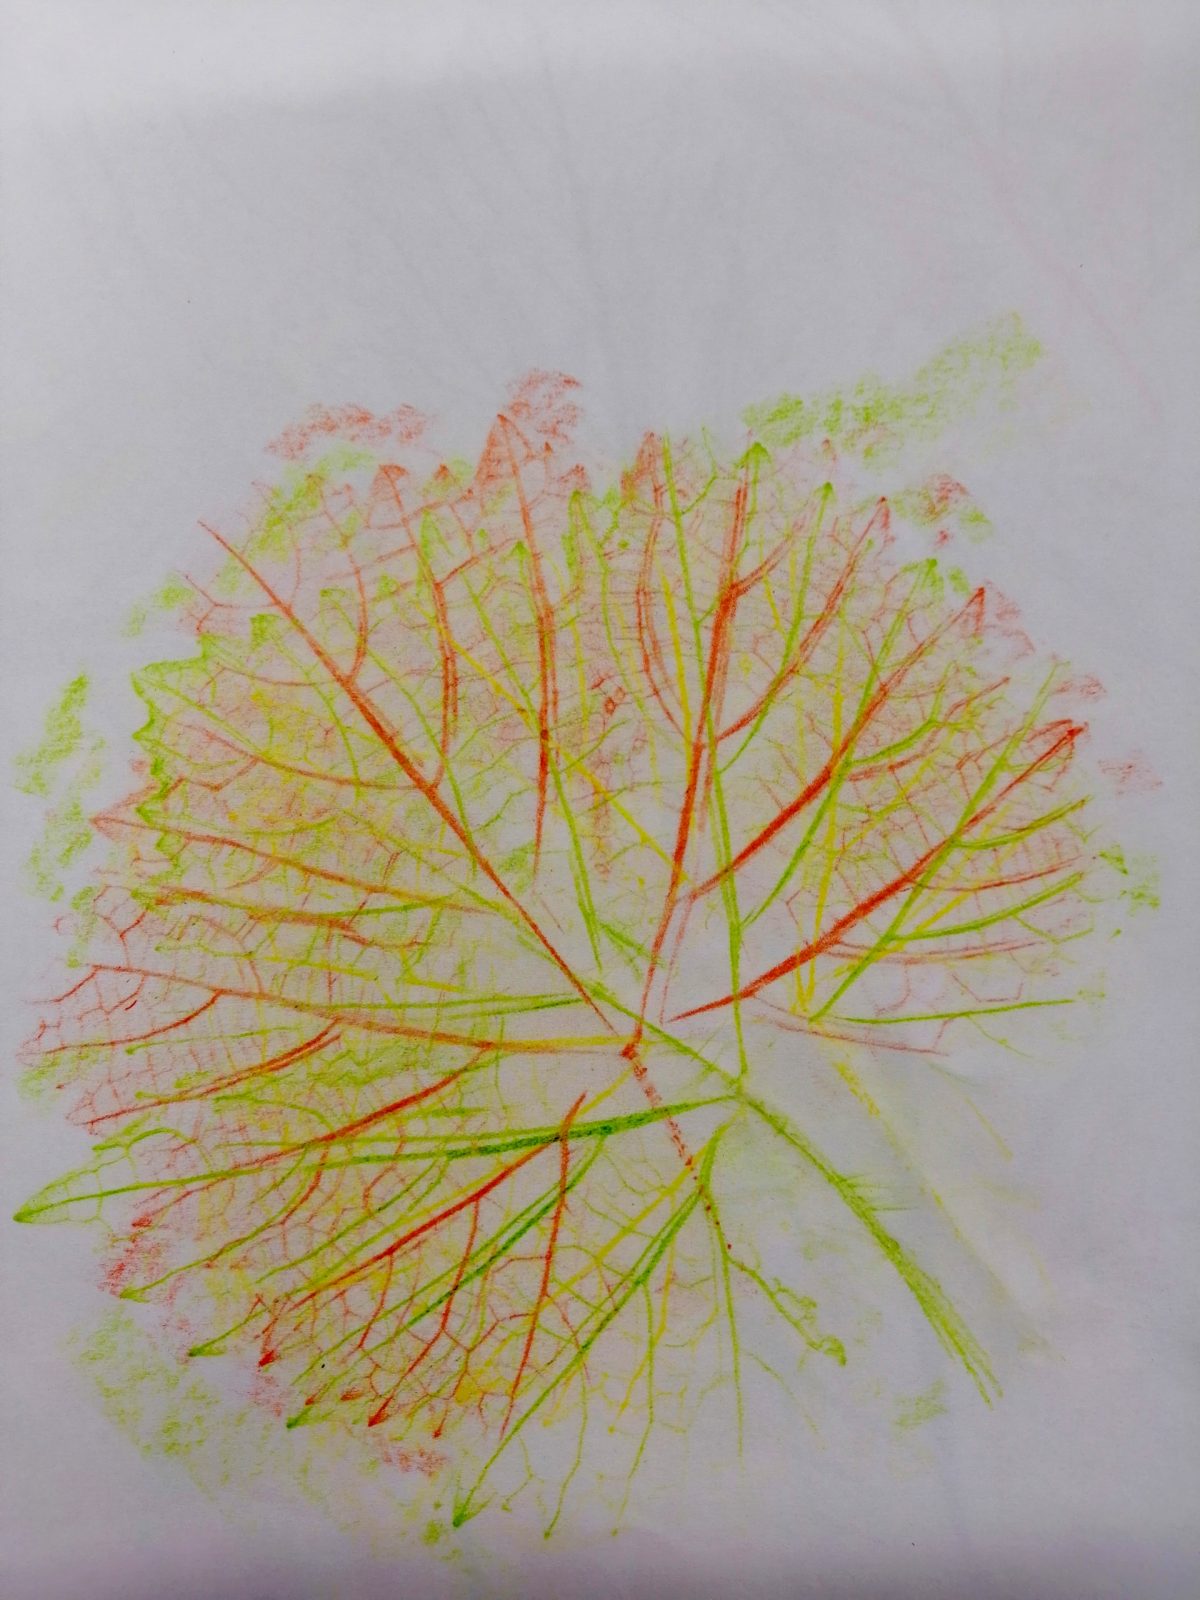 Kompozycja plastyczna struktury jesiennego liścia w układzie diagonalnym. Praca wykonana w technice frotażu z użyciem barw ciepłych i zimnych.